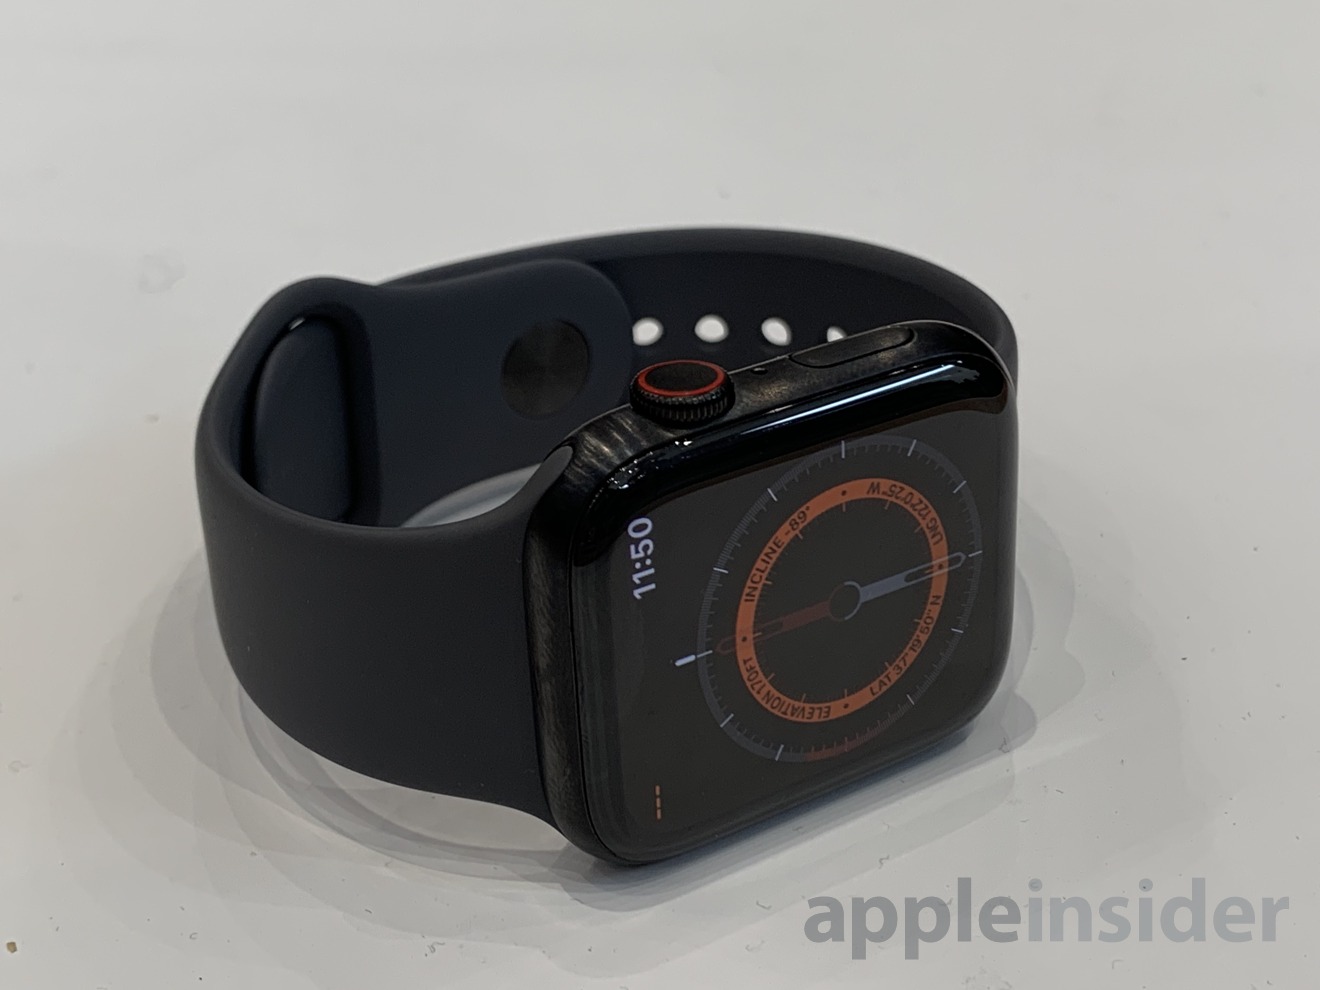 Apple Watch Series 5 in black titanium